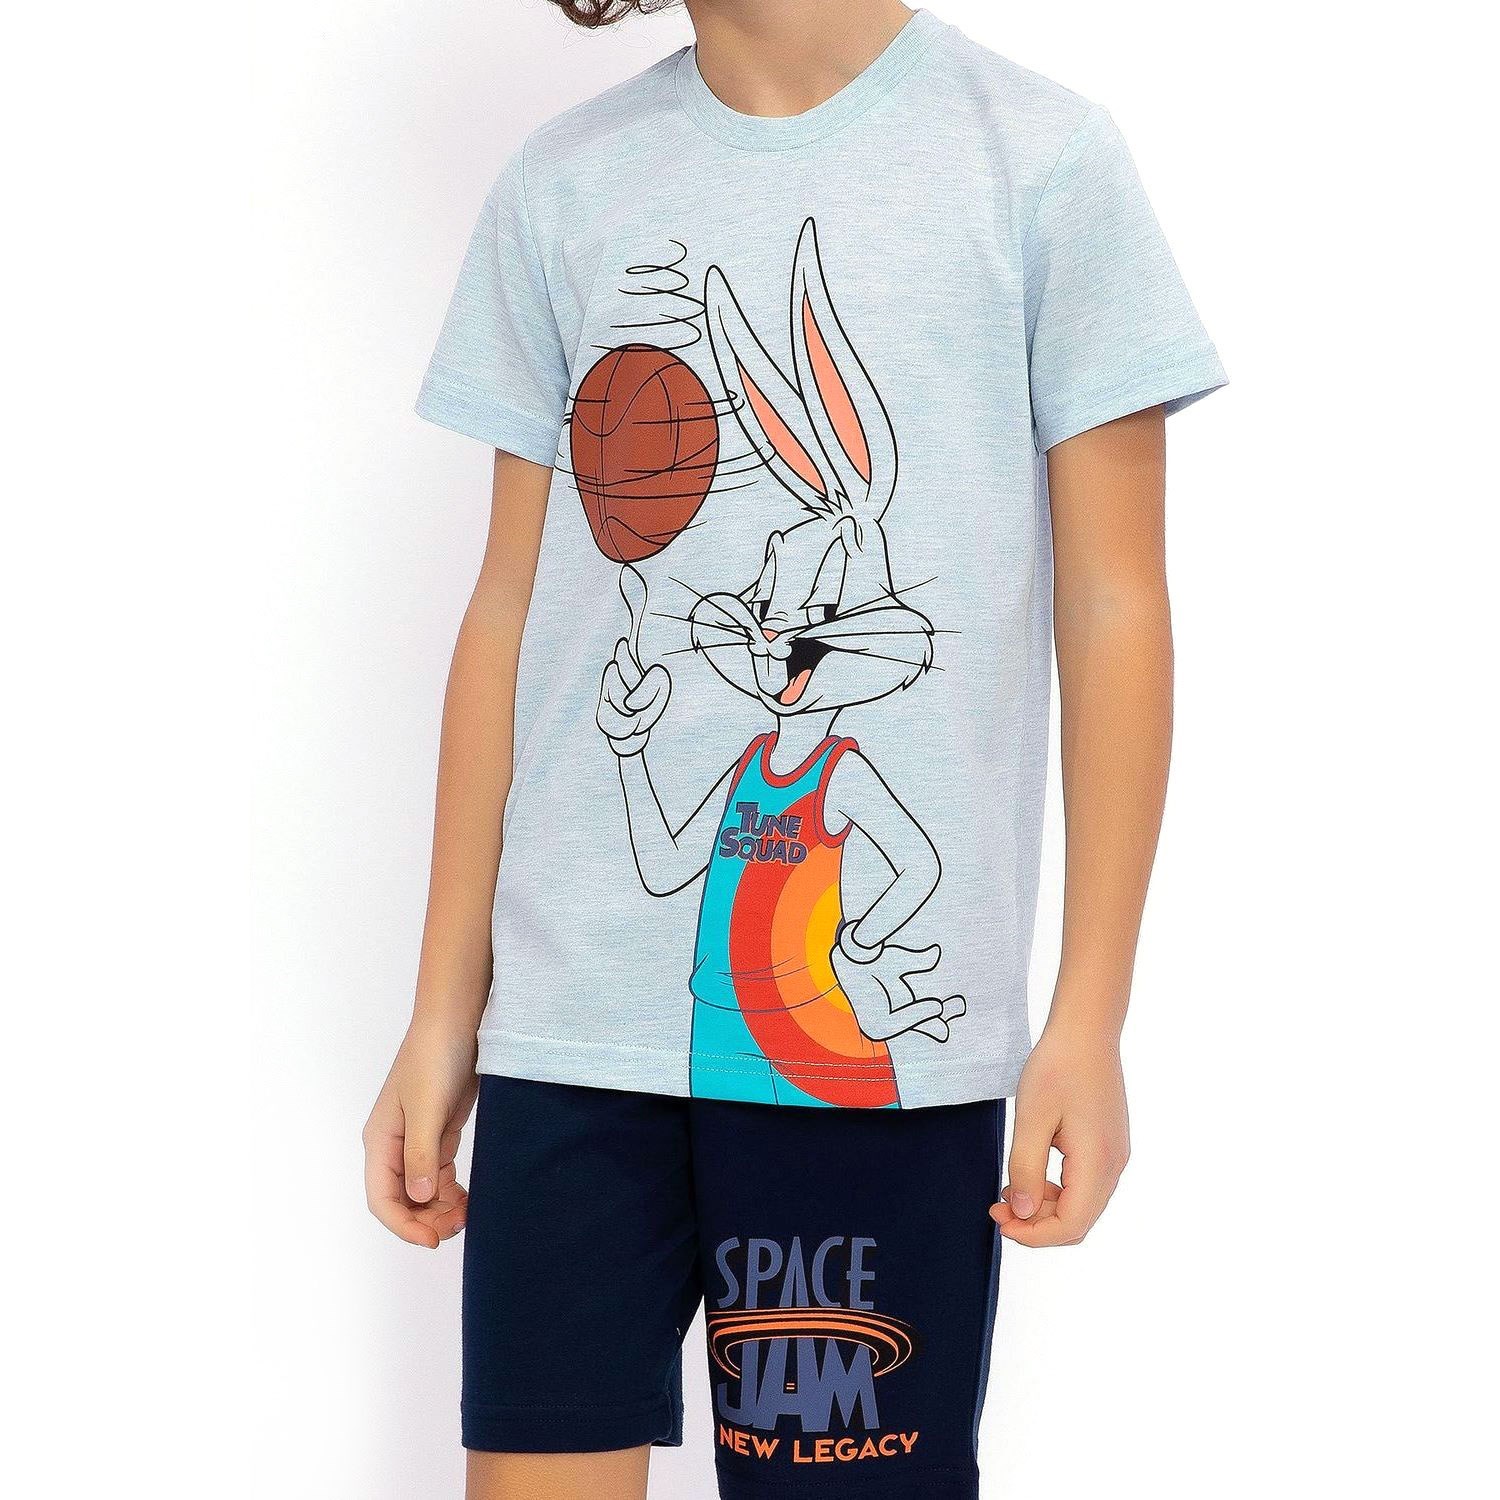 Bugs Bunny Erkek Çocuk Bermuda Takımı L1466-3 Mavi Melanj